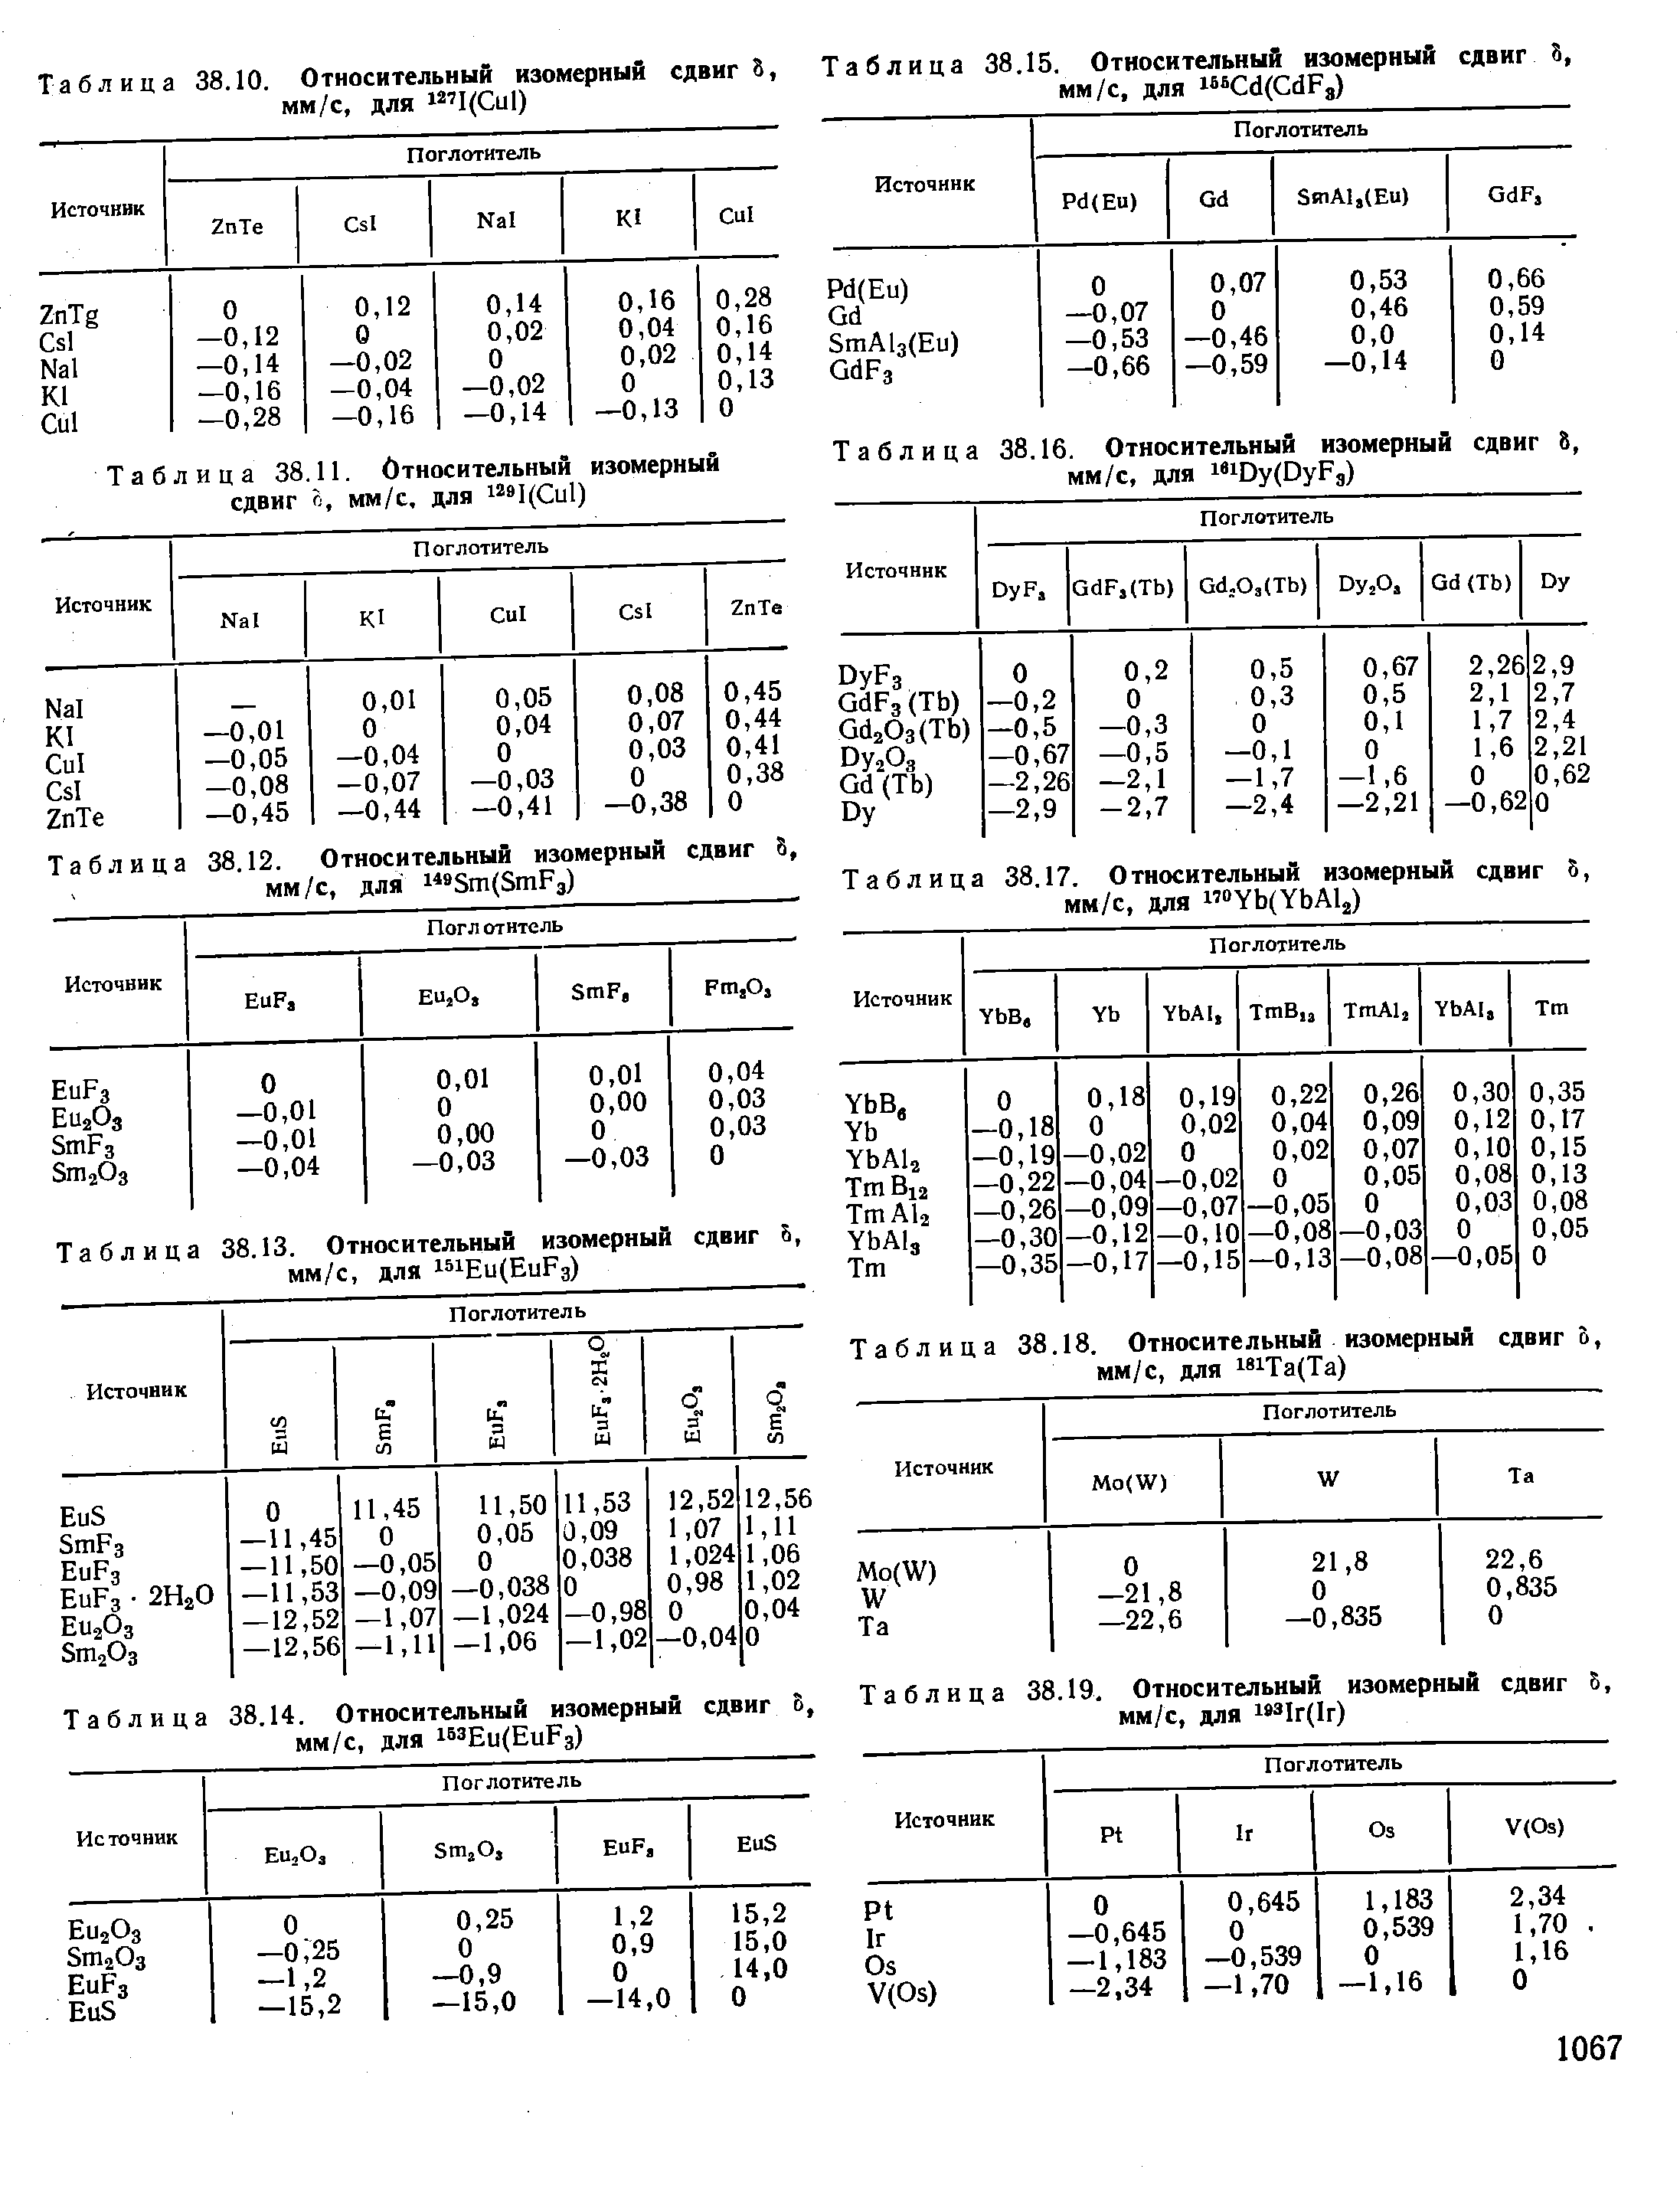 Таблица 38.11. Относительный изомерный сдвиг Й, мм/с, для I( ul)
